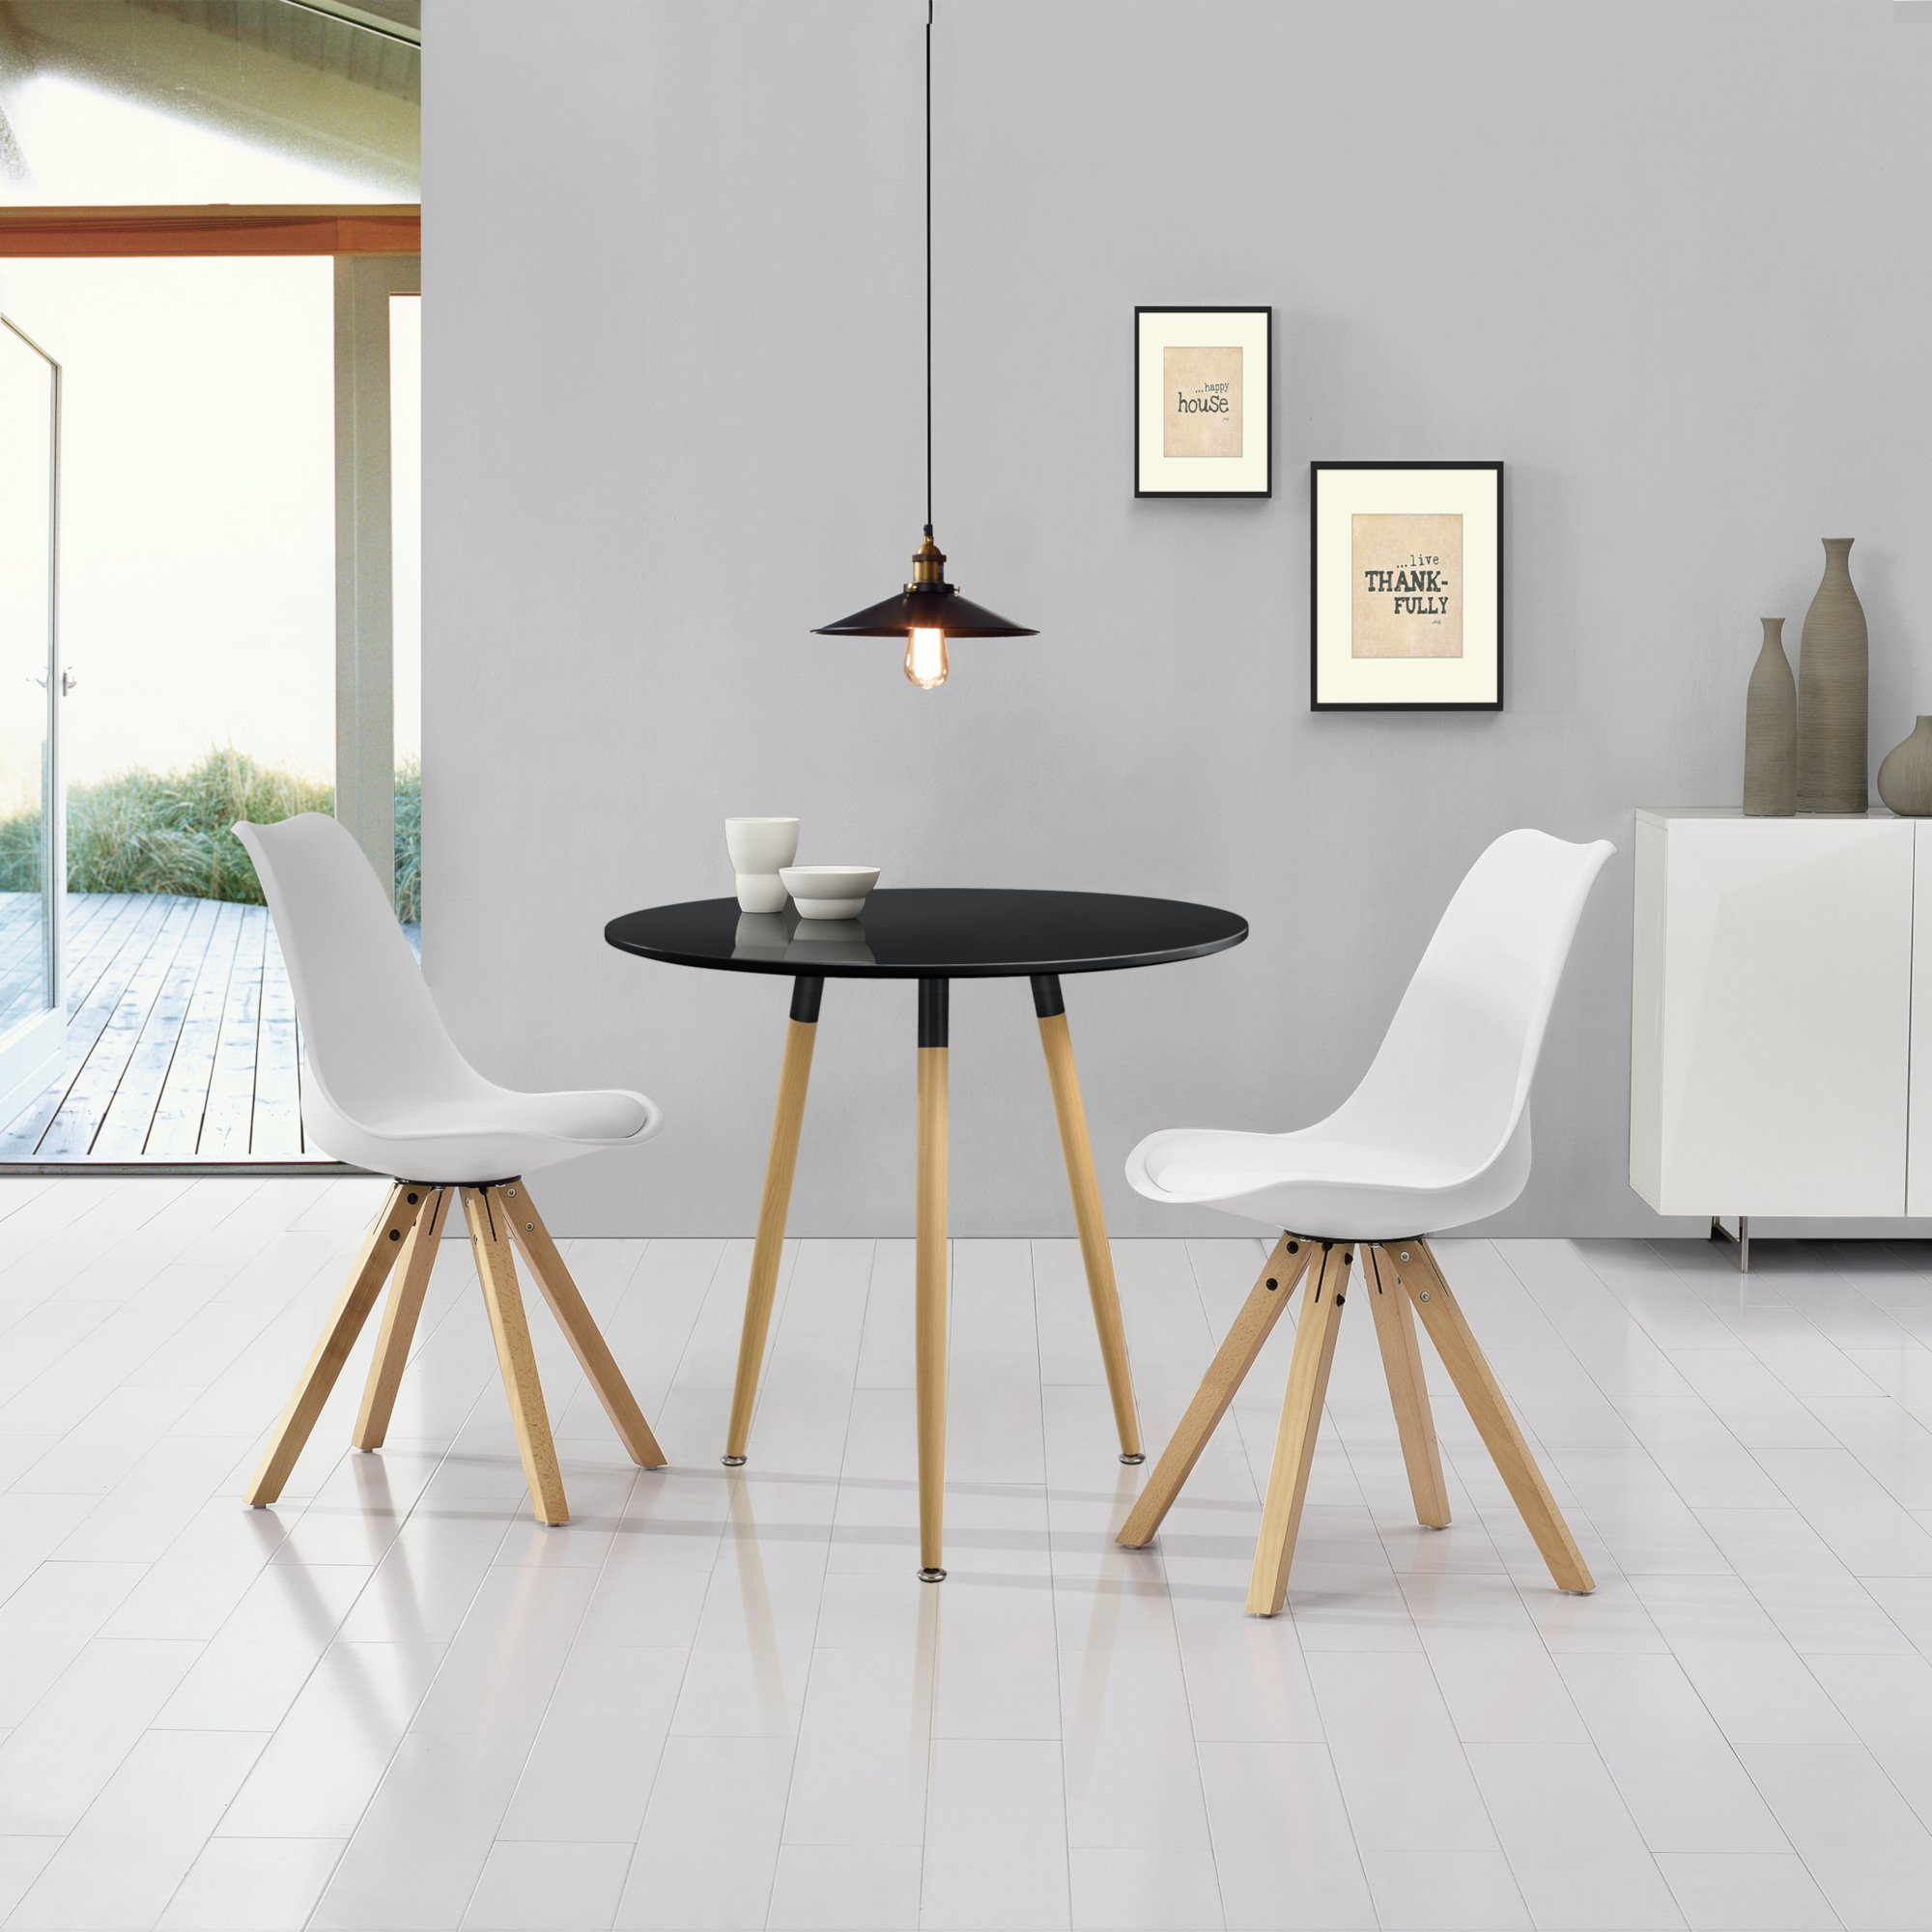 ® Esstisch mit 4 Stühlen weiß 120x60cm Küchentisch Esszimmertisch en.casa